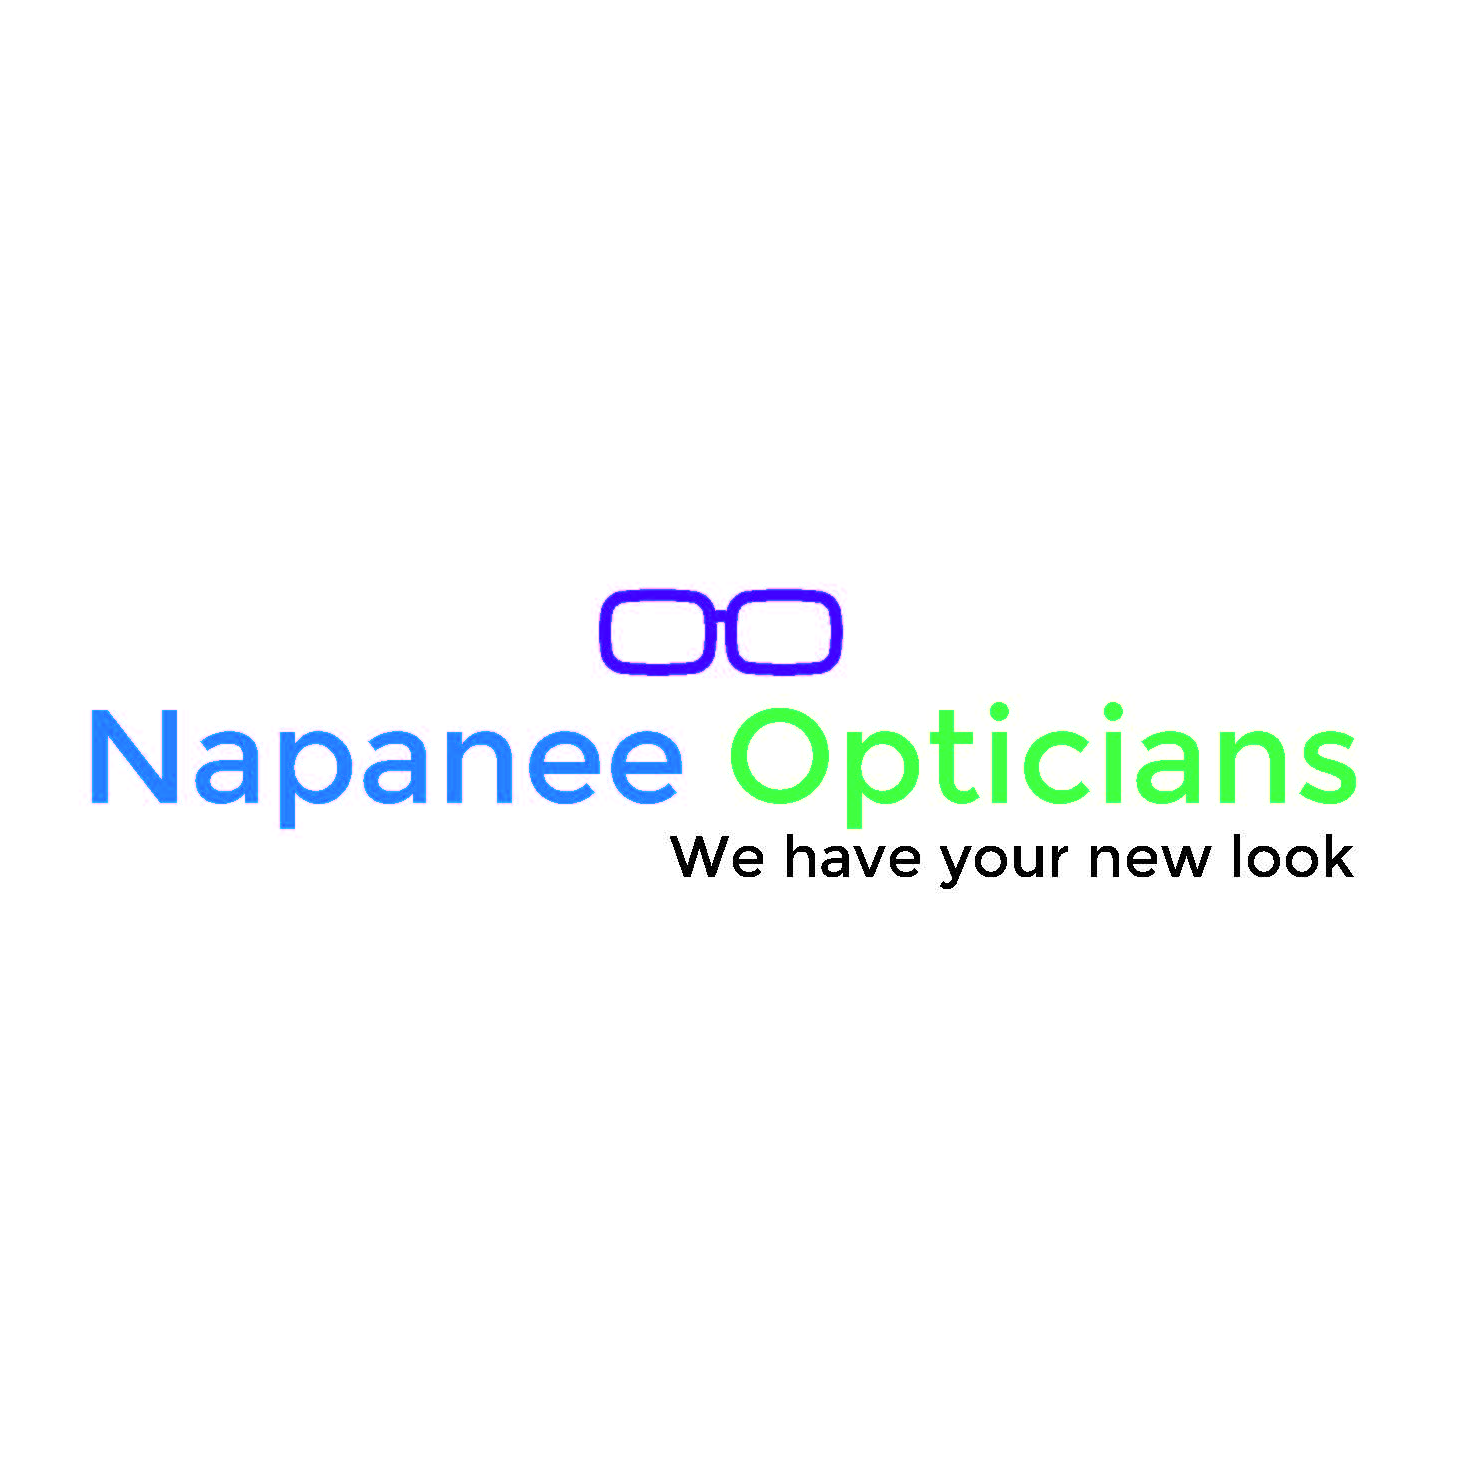 Napanee Opticians's logo